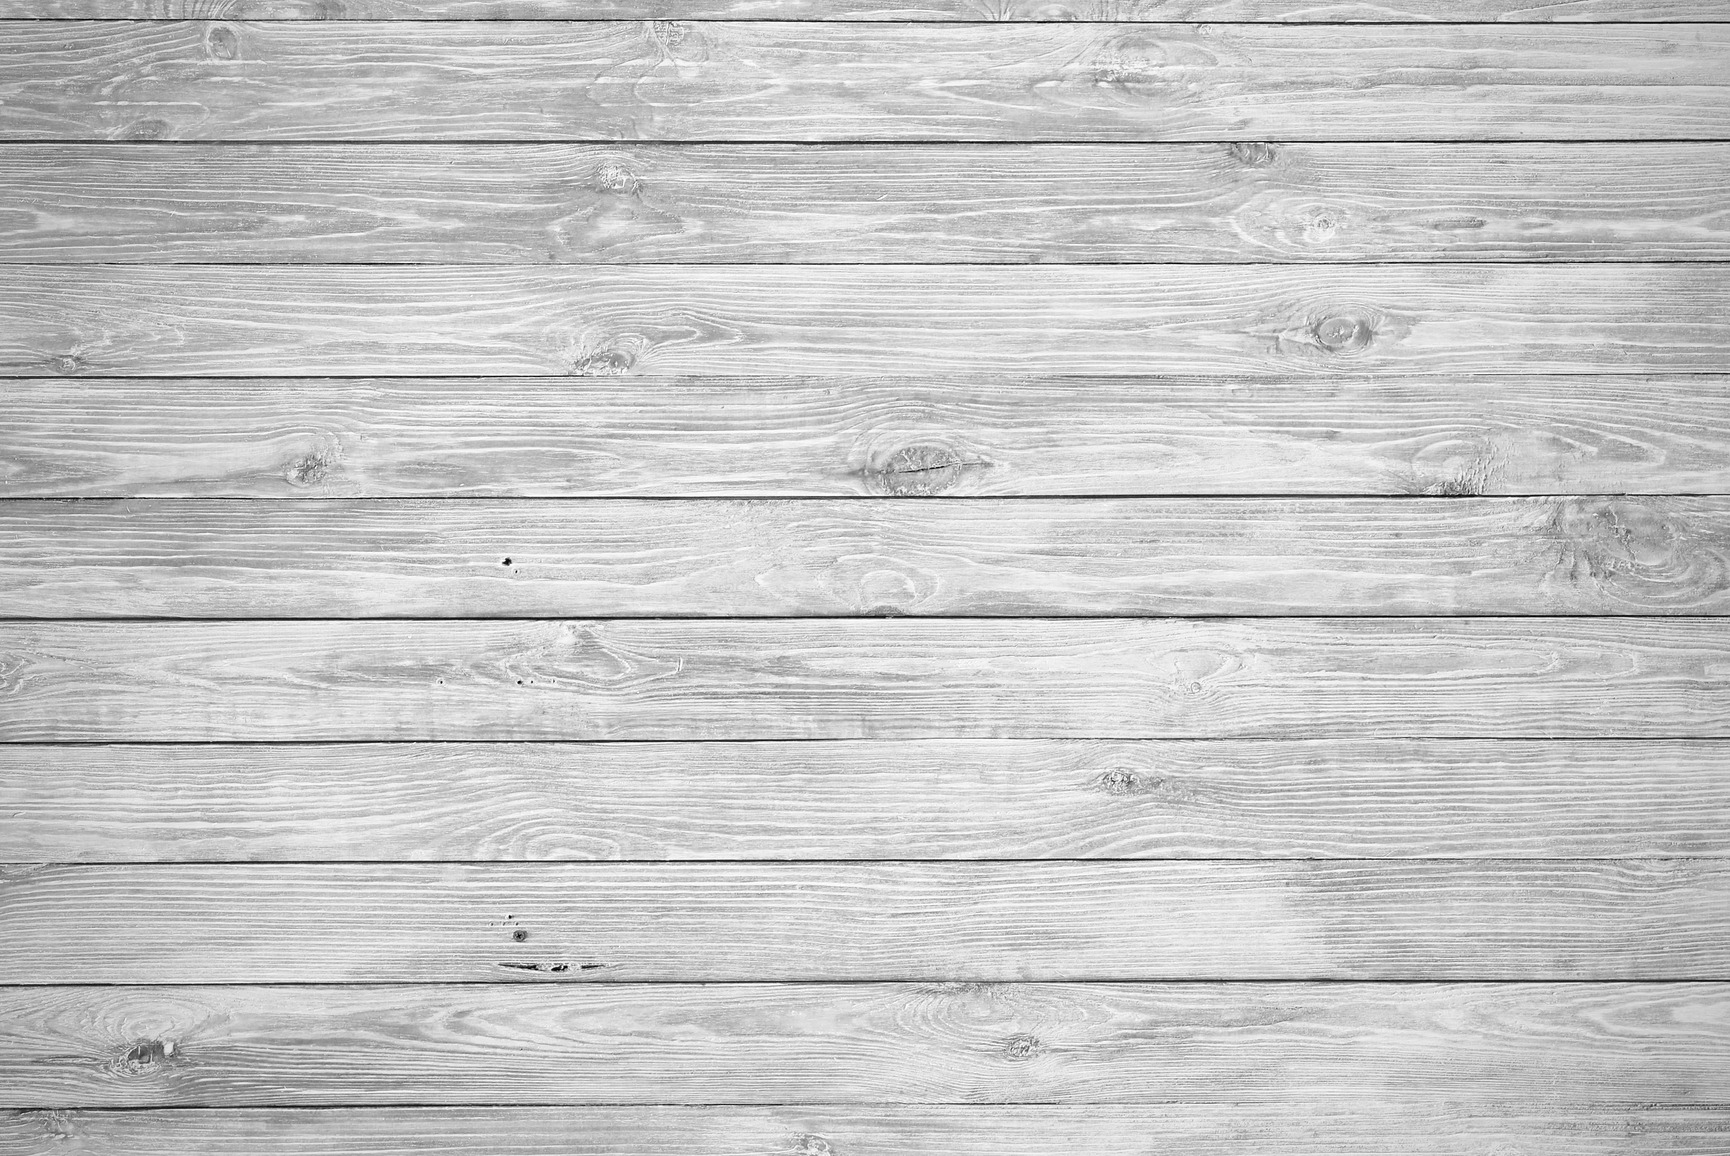 Hình nền gỗ trắng: Việc lựa chọn hình nền gỗ trắng giúp tăng tính tinh tế, sạch sẽ cho màn hình máy tính của bạn. Với nhiều mẫu mã phù hợp cho nhiều phong cách khác nhau, bạn chắc chắn sẽ tìm được hình nền đẹp cho riêng mình.